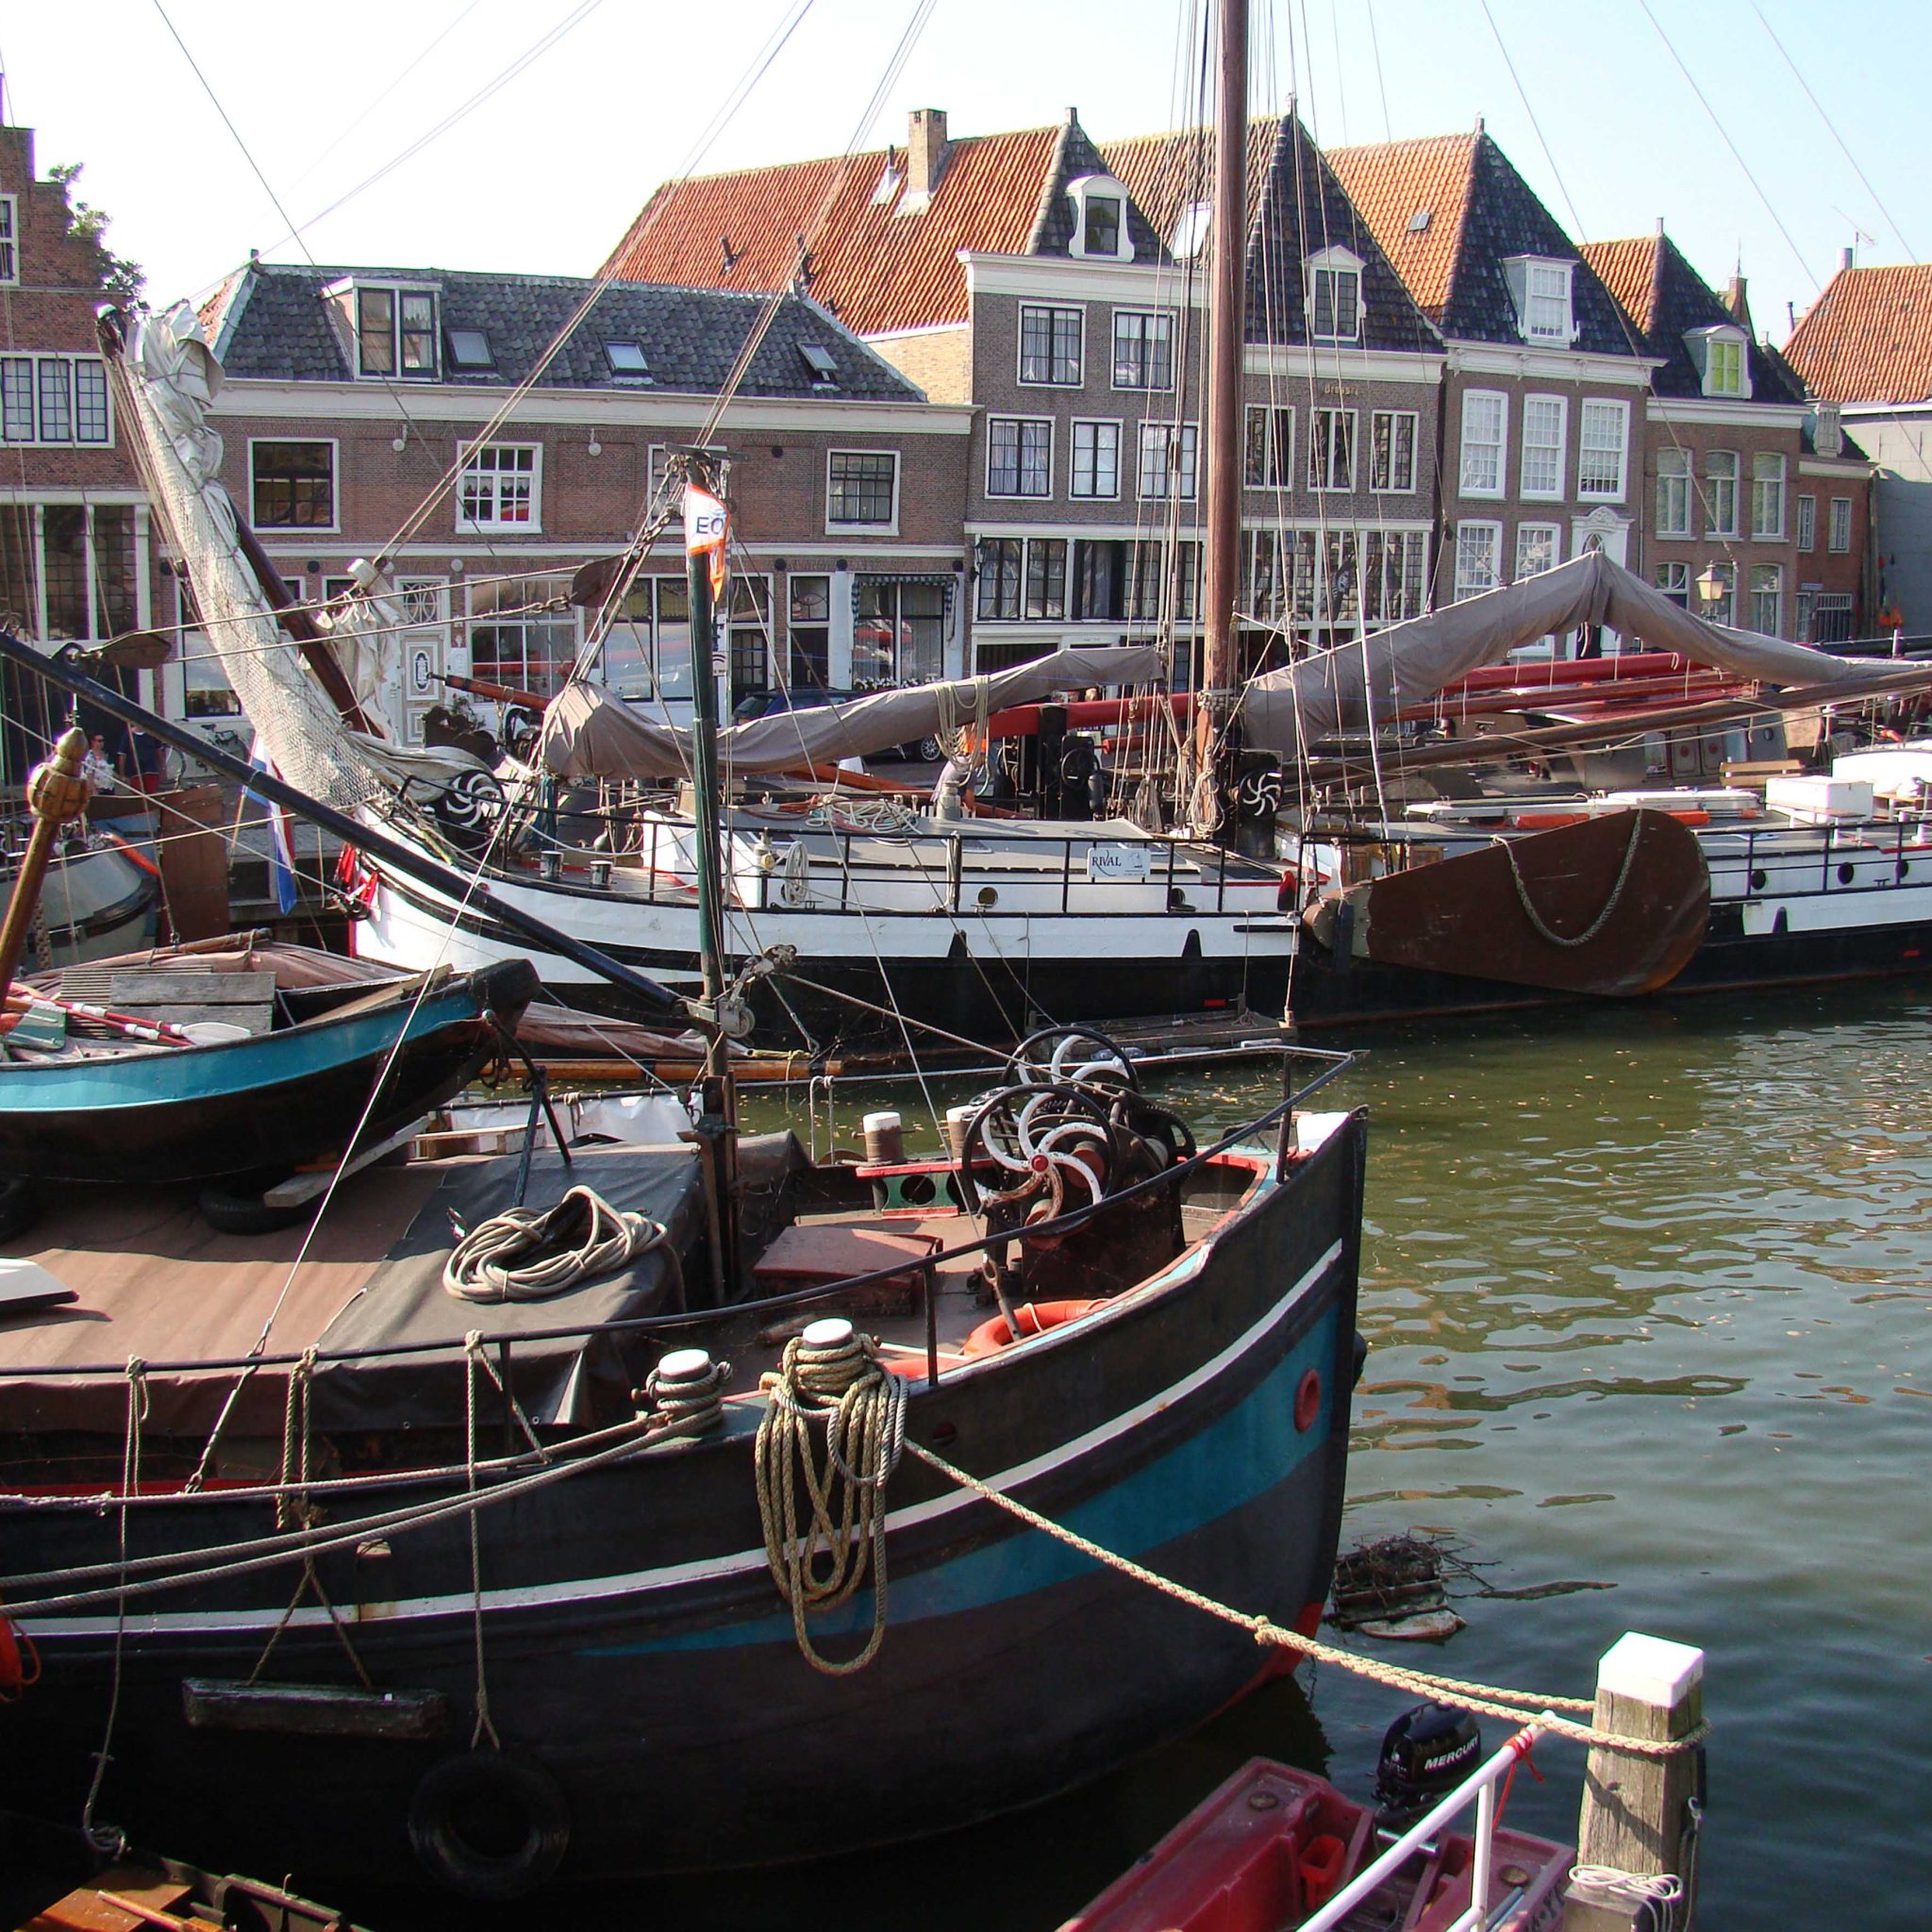 De beroepszeilvloot is niet weg te denken uit voormalige Zuiderzeehavens als die van Hoorn. De schepen zijn er beeldbepalend en hun activiteiten van economisch belang. (Foto Peter Fokkens)